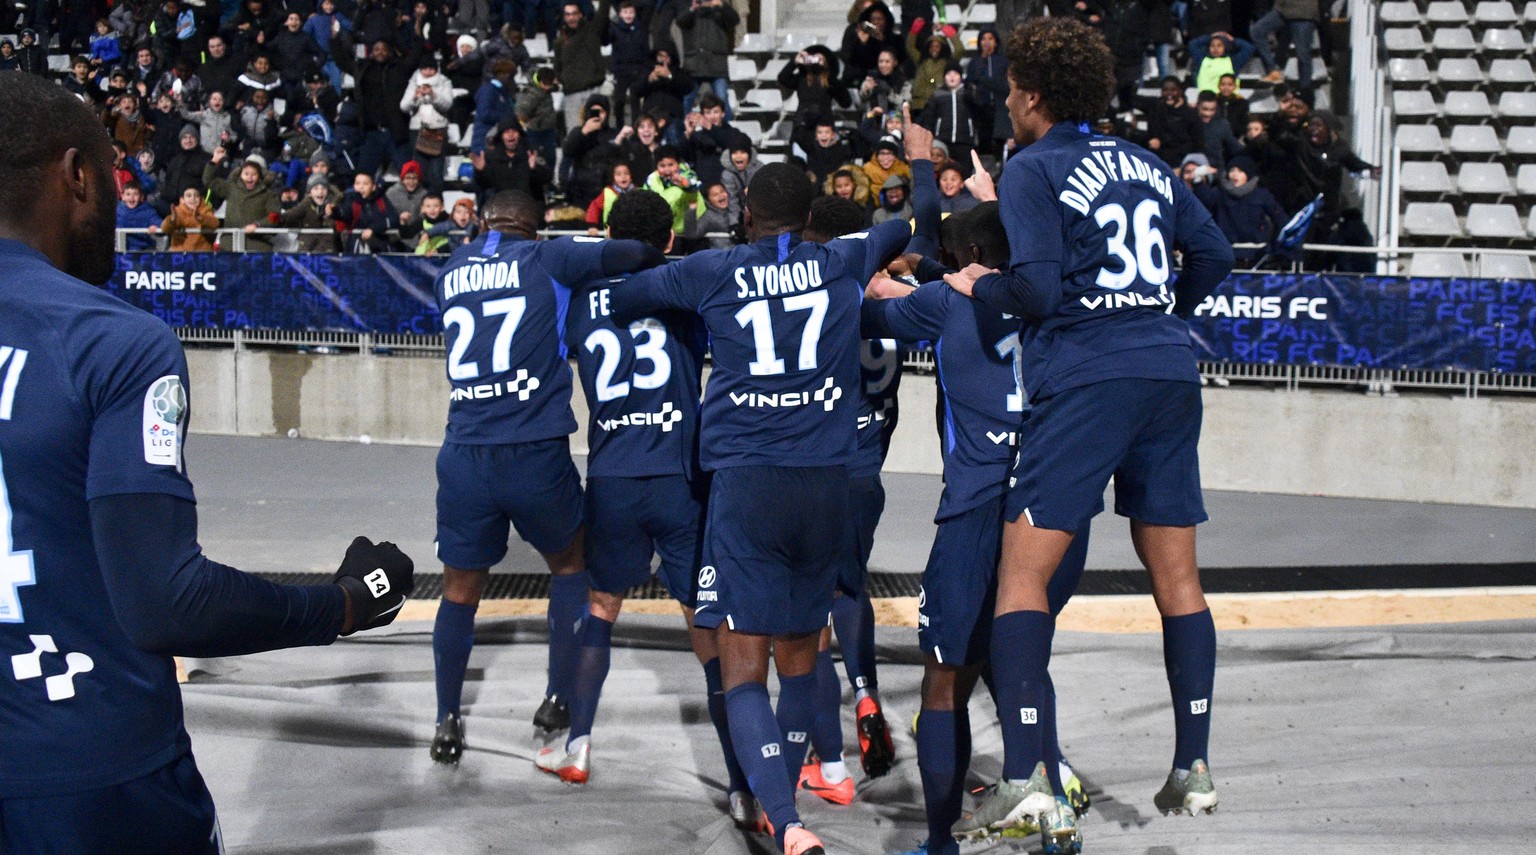 JOIE - EQUIPE DE FOOTBALL DU PARIS FC FOOTBALL : Paris FC vs Auxerre - Dominos Ligue 2 - 22/11/2019 FEP/Panoramic PUBLICATIONxNOTxINxFRAxITAxBEL